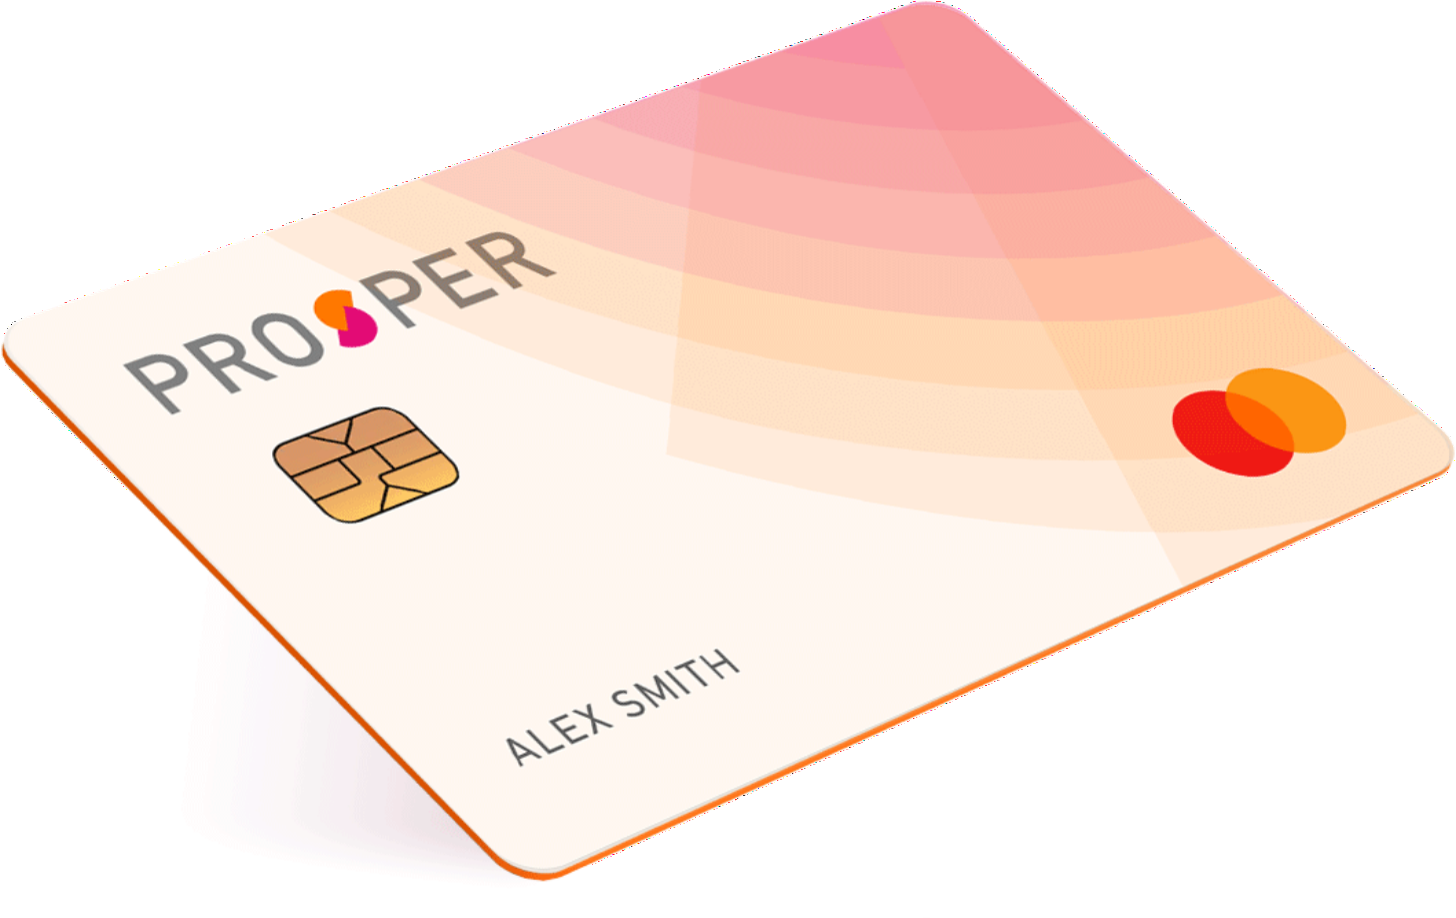 Prosper | Credit Card